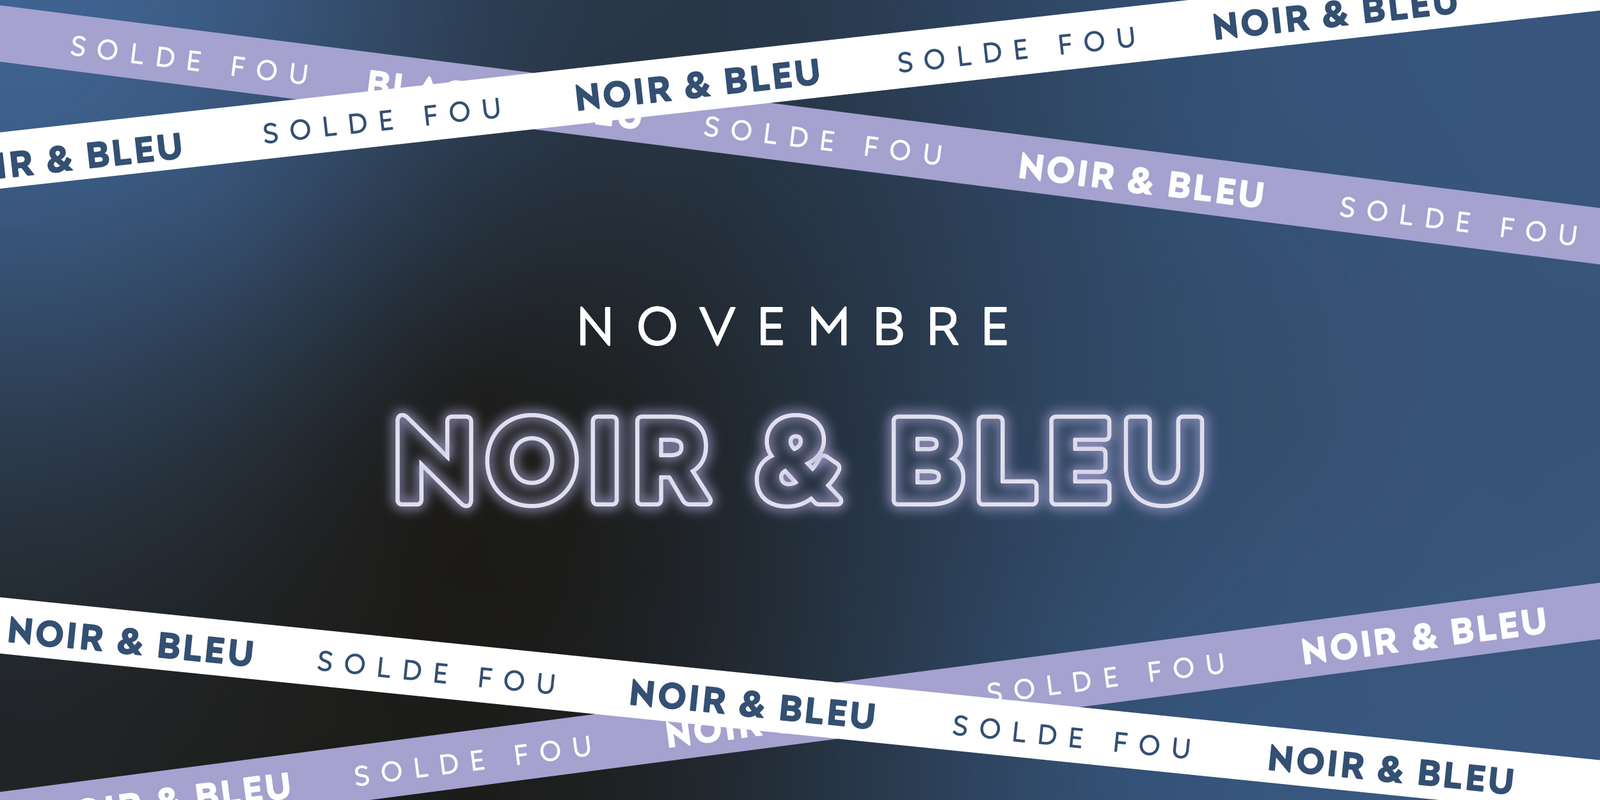 Le Novembre Noir et Bleu chez Bleu Lavande, un solde fou!